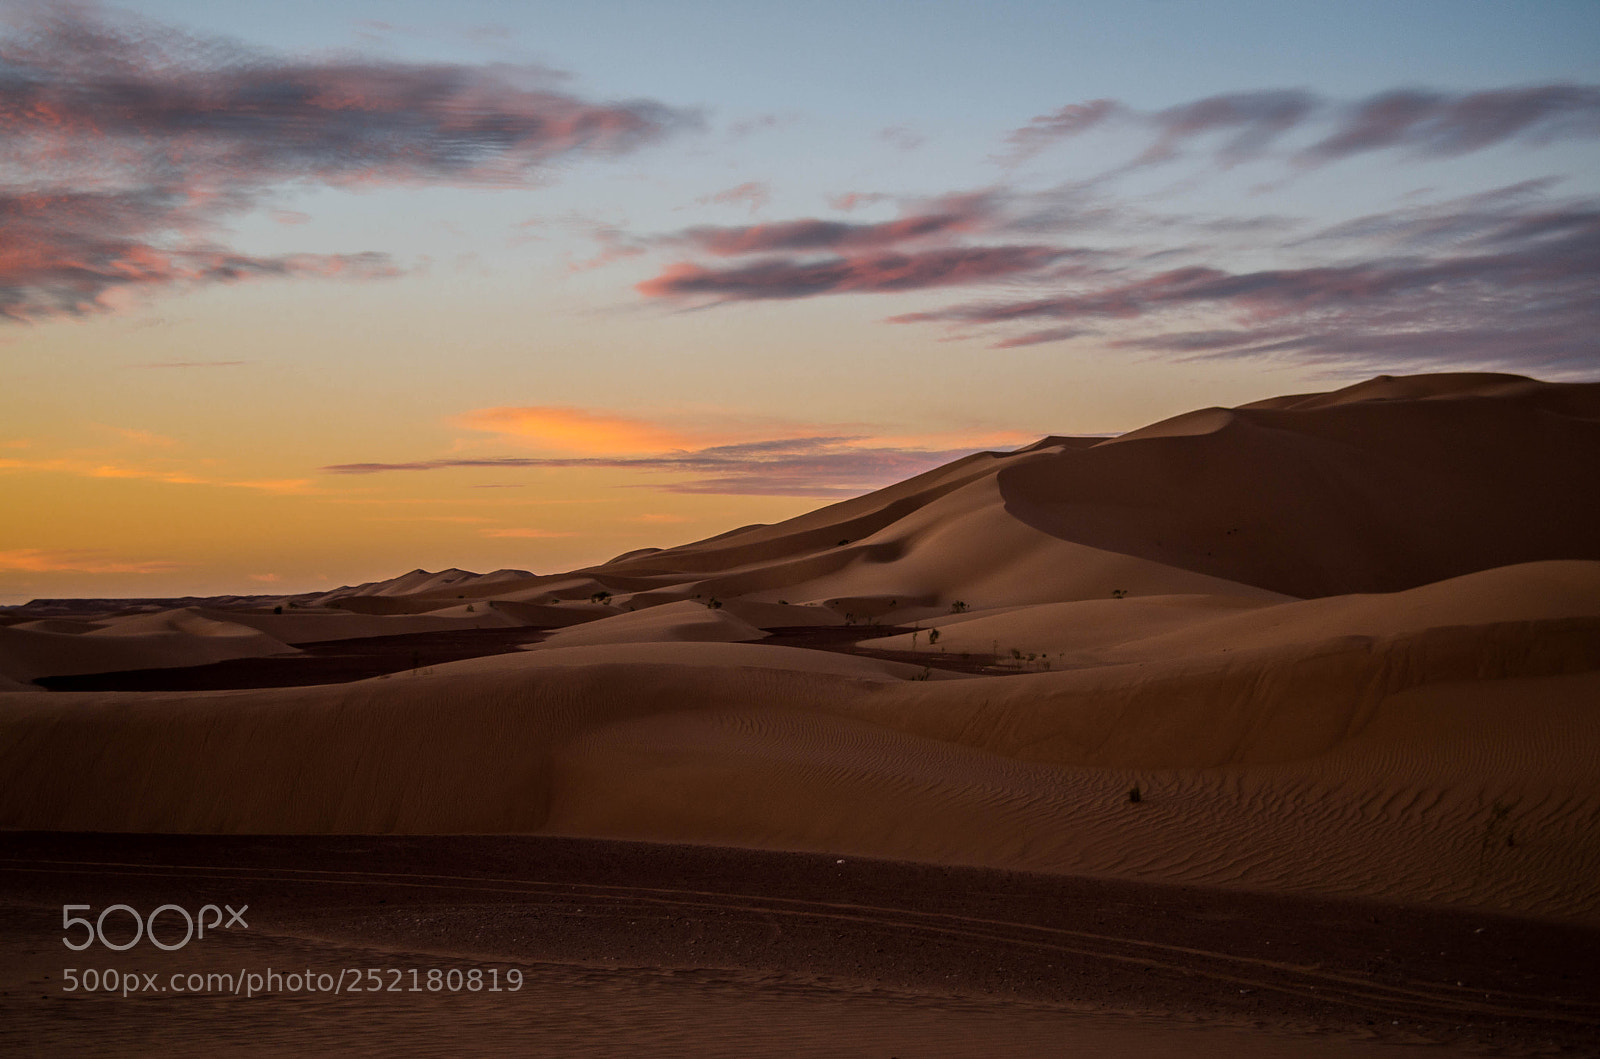 Pentax K-50 sample photo. Sunset from algerian desert photography